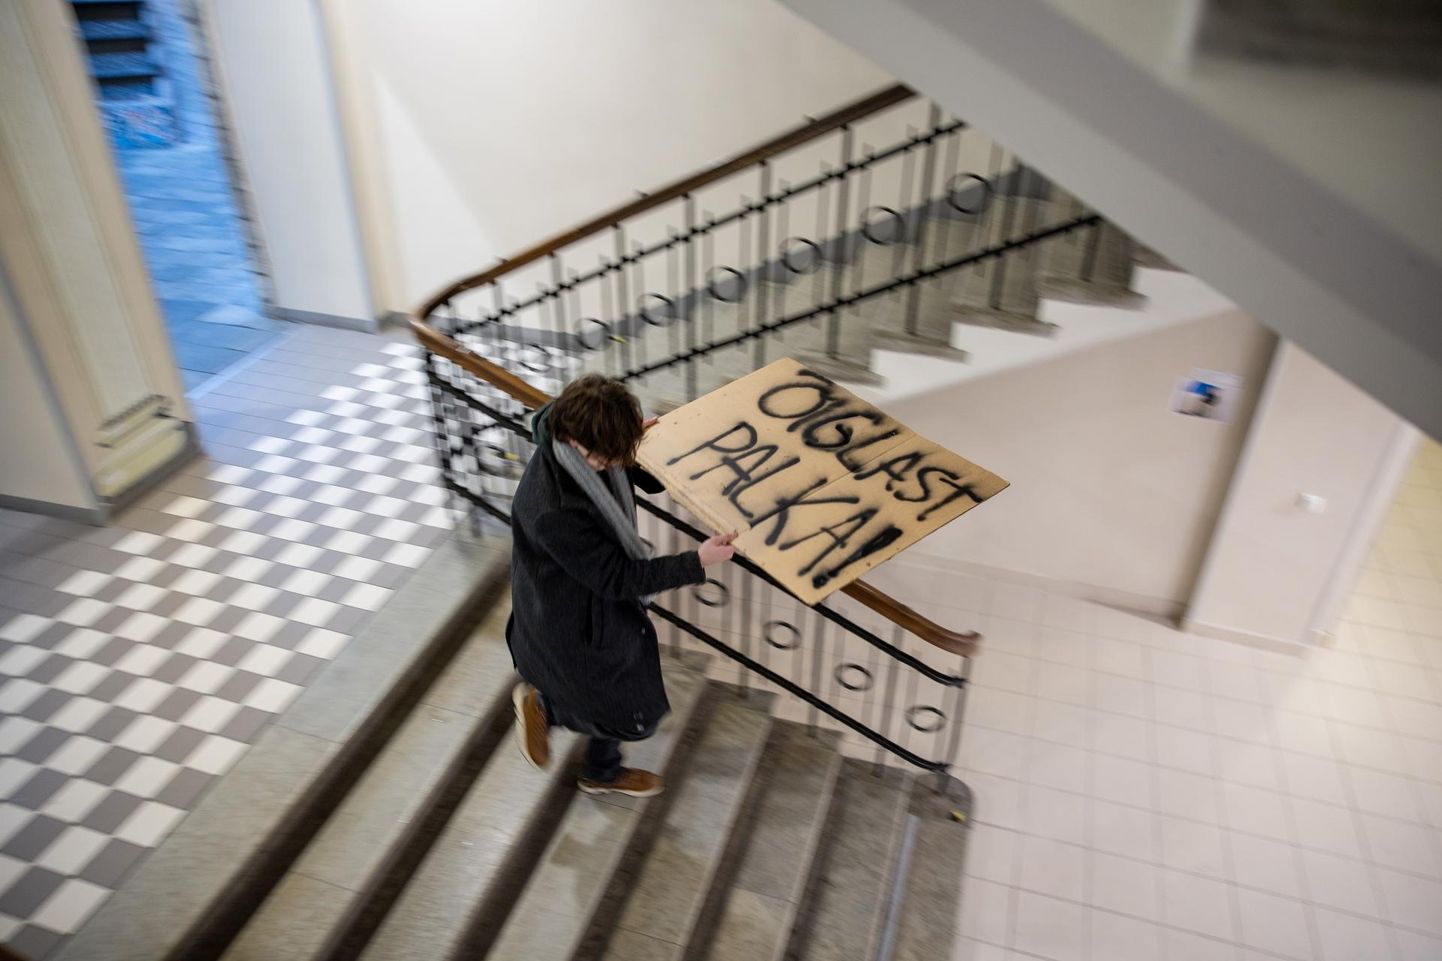 Esmaspäeval ei tormanud Tallinna 21. koolist Toompeale õpetajate kõnekoosolekule mitte ainult pedagoogid, vaid ka neid toetavad õpilased, kaasas vastvalminud plakatid. 